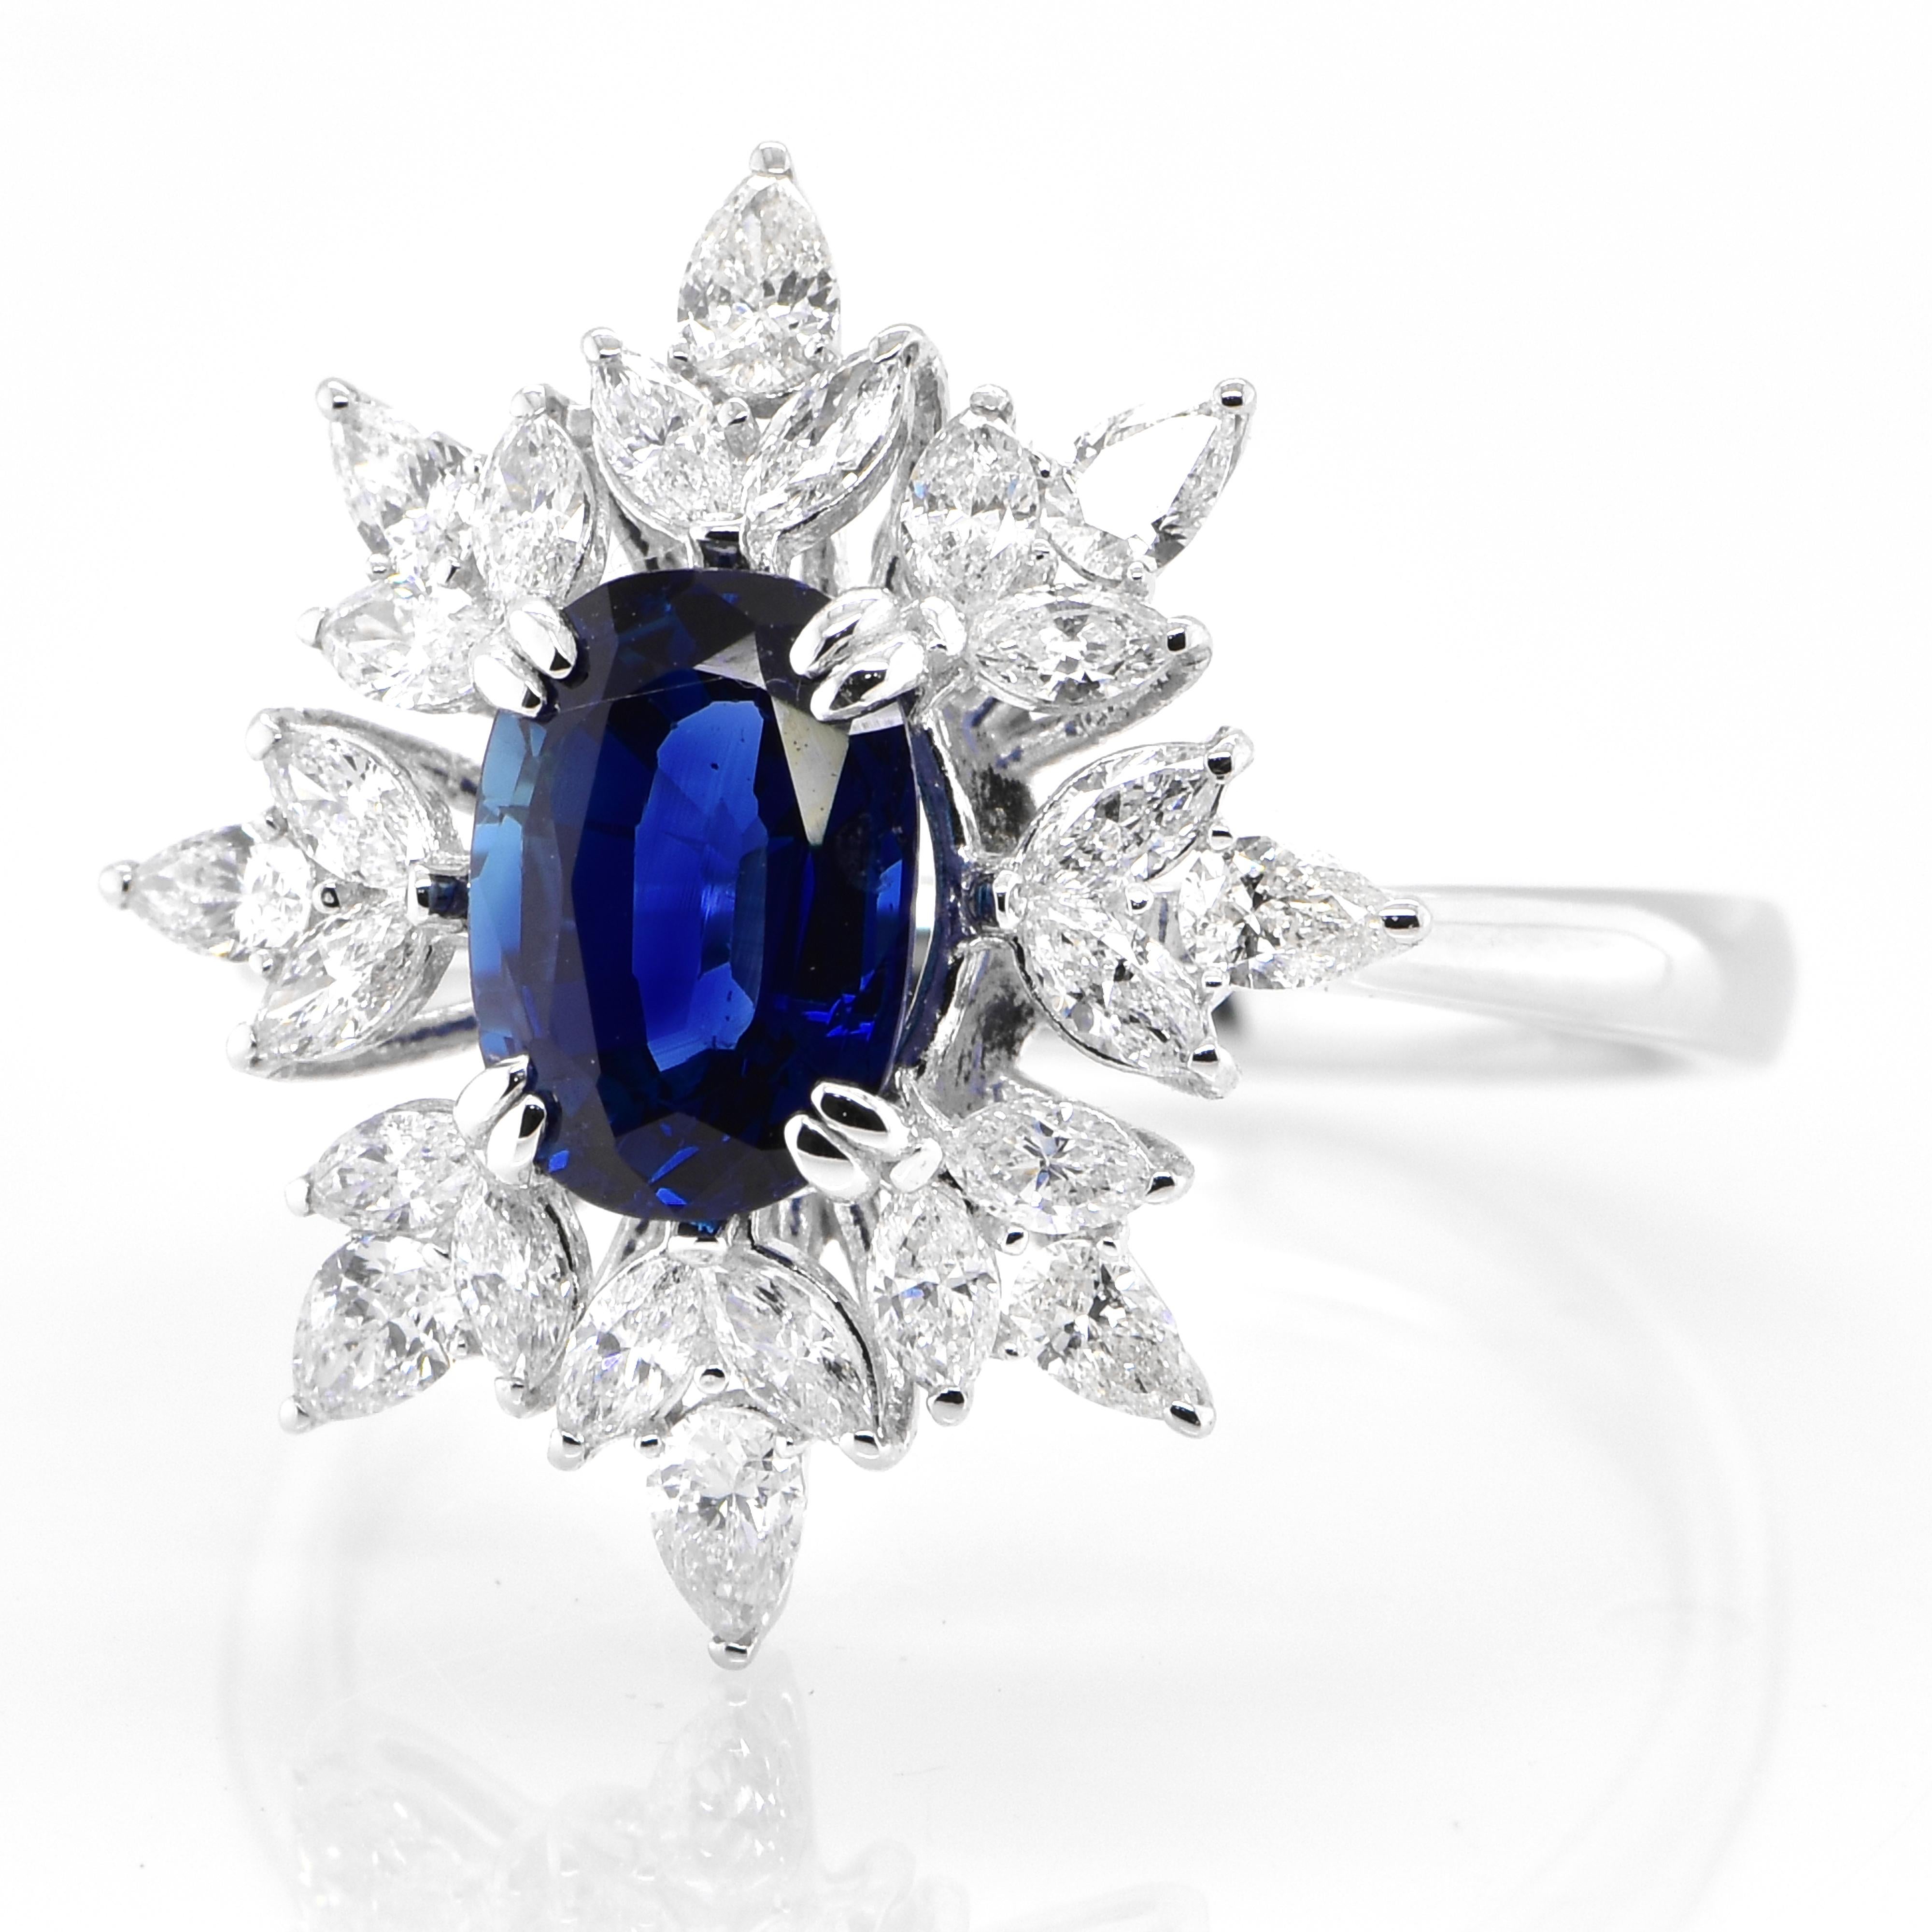 Magnifique bague ornée d'un saphir bleu royal non chauffé de 1,80 carat certifié par l'AIGS et d'accents de diamants de 0,82 carat, le tout serti dans du platine. Les saphirs ont une durabilité extraordinaire - ils excellent en termes de dureté